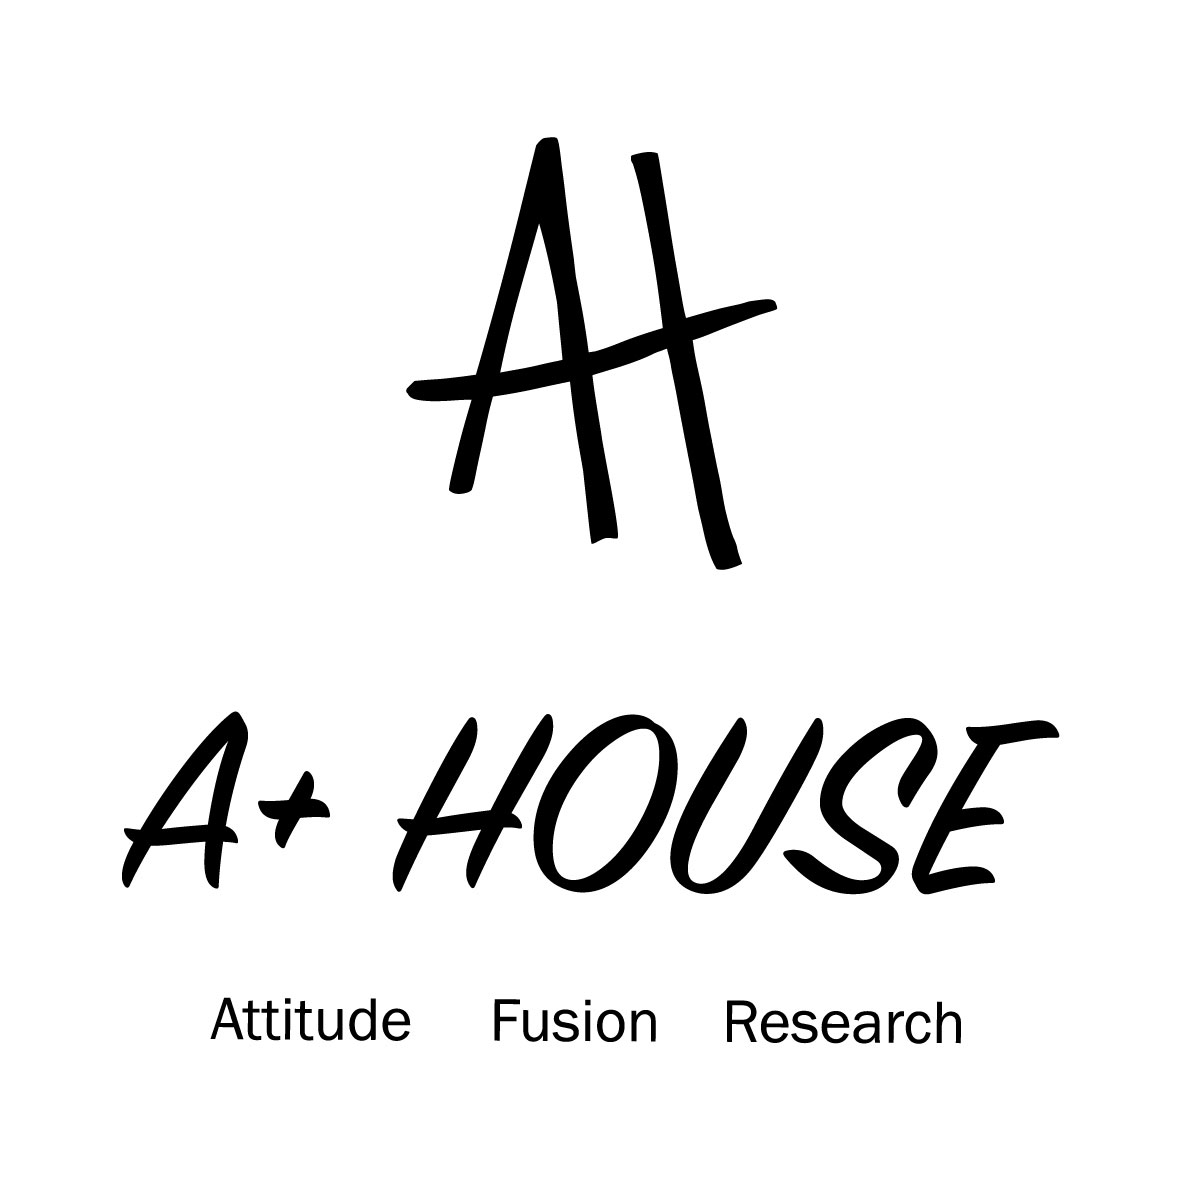 A+HOUSE